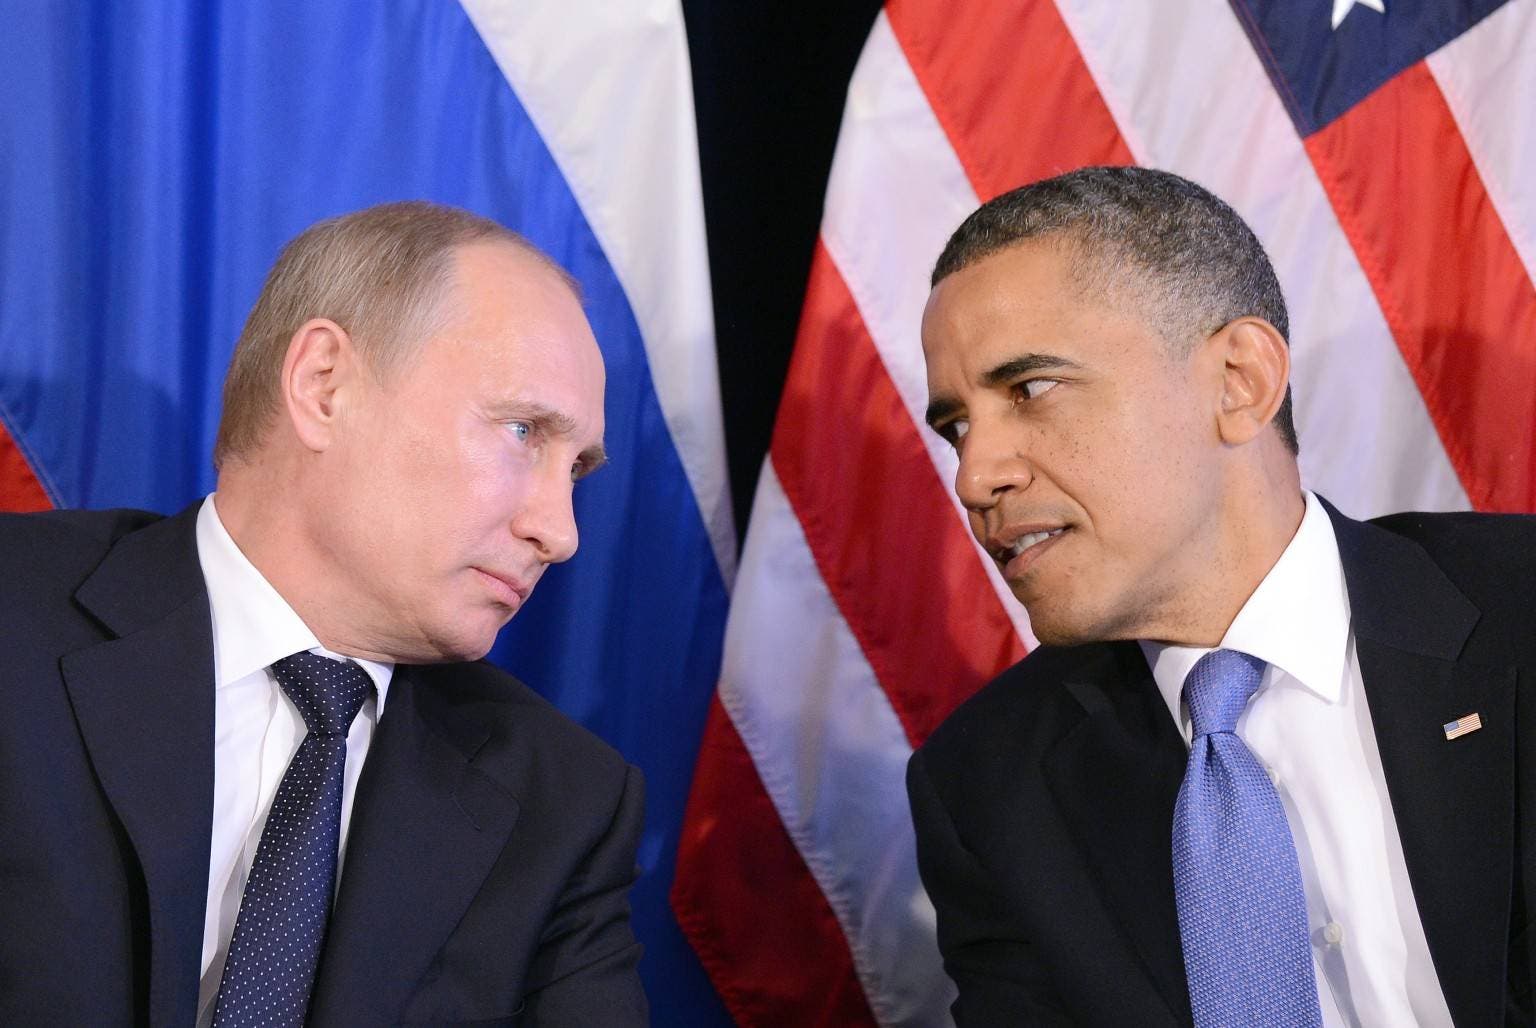 EE.UU. impone sanciones económicas contra Rusia por sus ataques cibernéticos